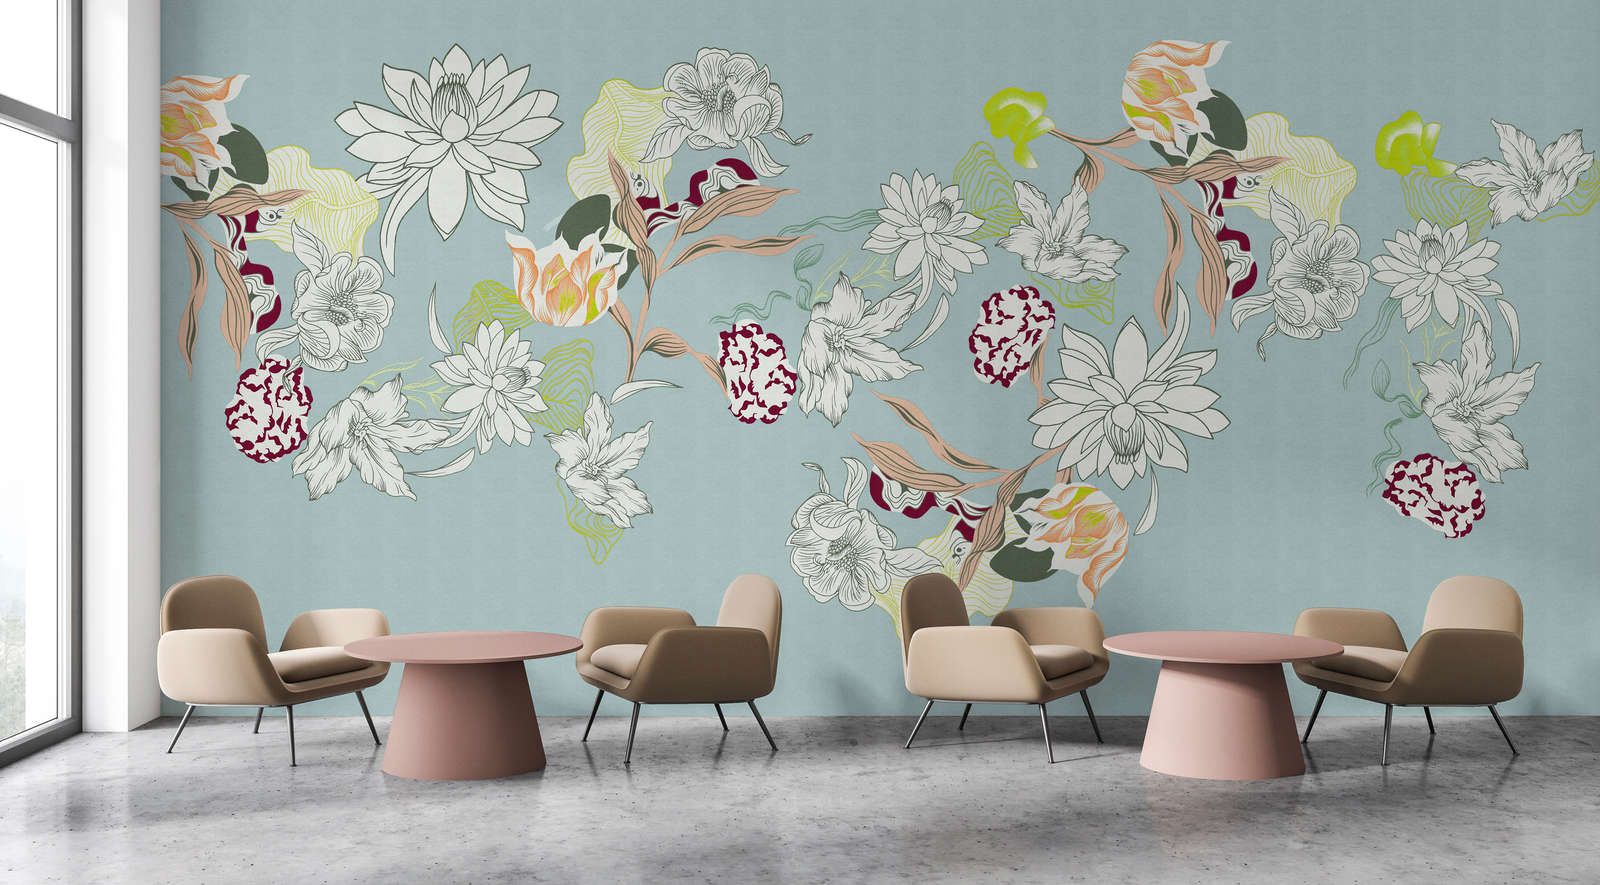             Fotomural »botany 2« - Motivos florales abstractos con toques verdes sobre una sutil textura de lino - Material sin tejer suave y ligeramente nacarado
        